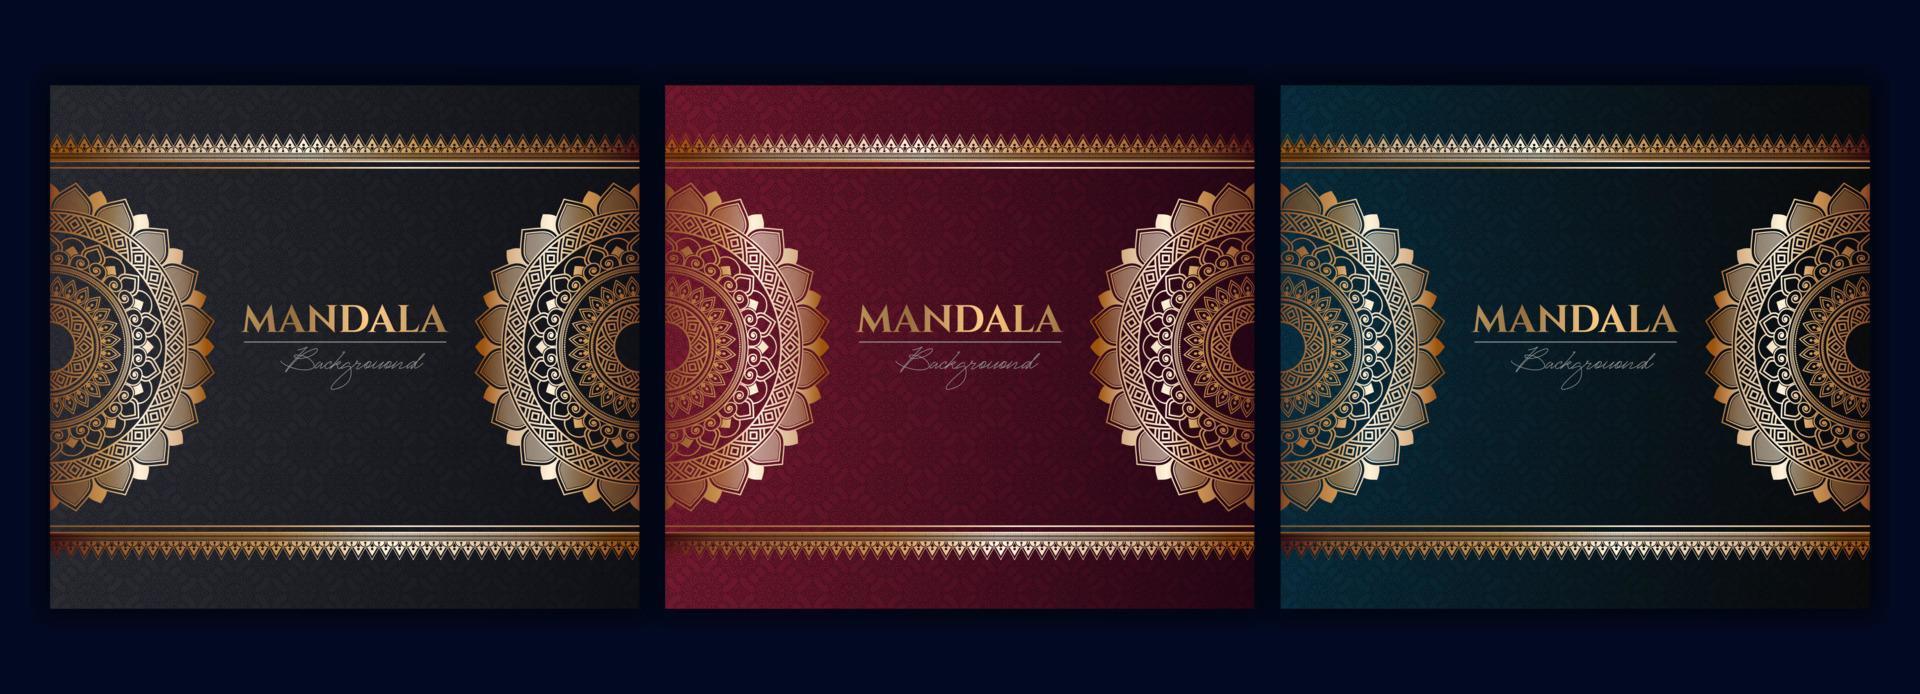 Satz von abstrakten Gold-Luxus-Mandala-Hintergrund-Vektor-Vorlagen, kreisförmige Zier-Arabesken-Muster für Poster, Cover, Broschüre, Flyer. roter, grüner, blauer hintergrund mit ethnischem blumenmandalaelement vektor